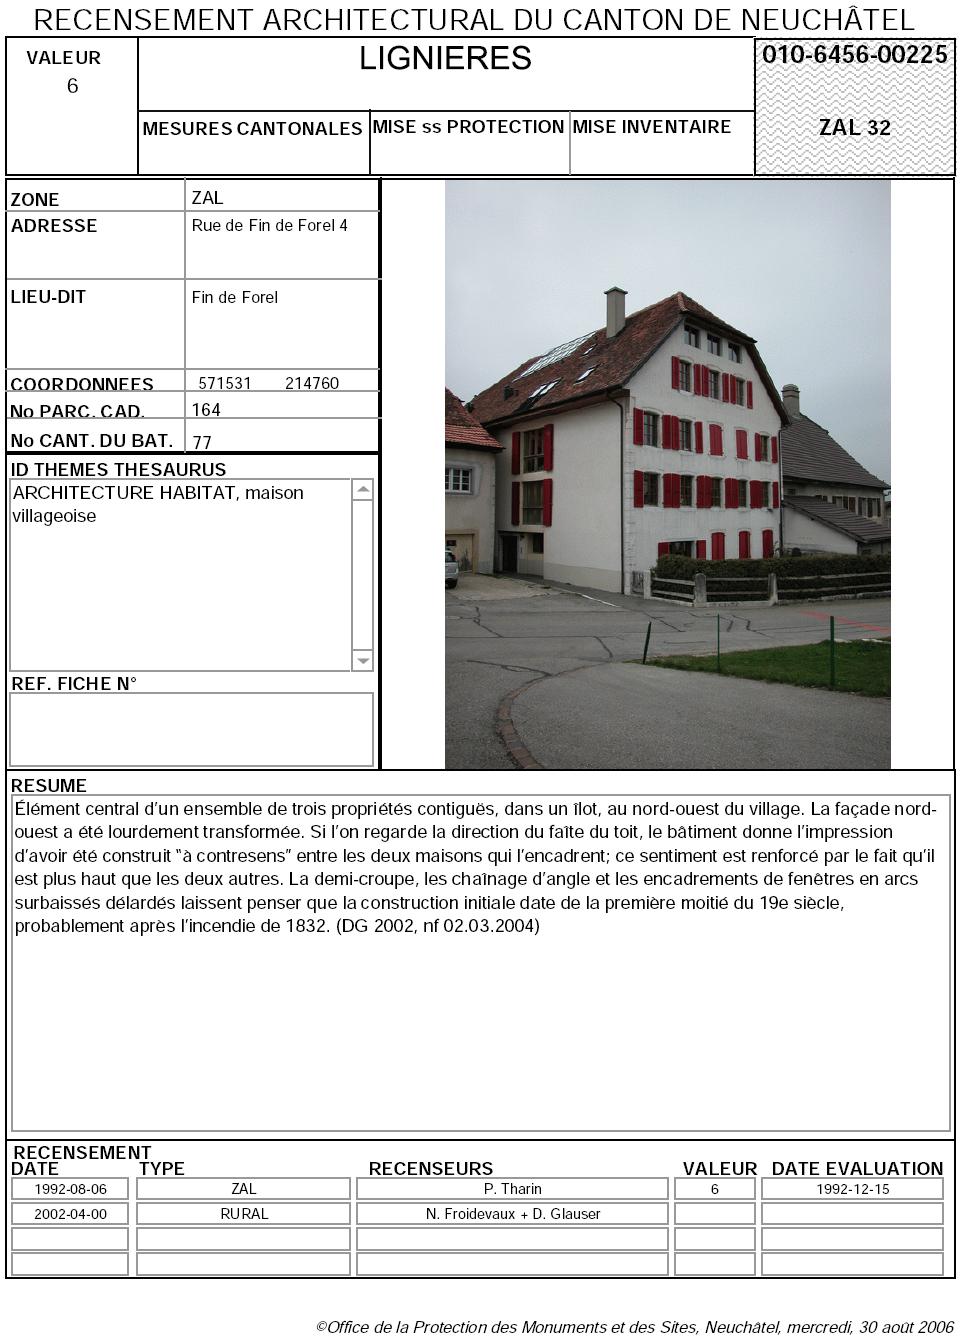 Recensement architectural du canton de Neuchâtel: Fiche 010-6456-00225